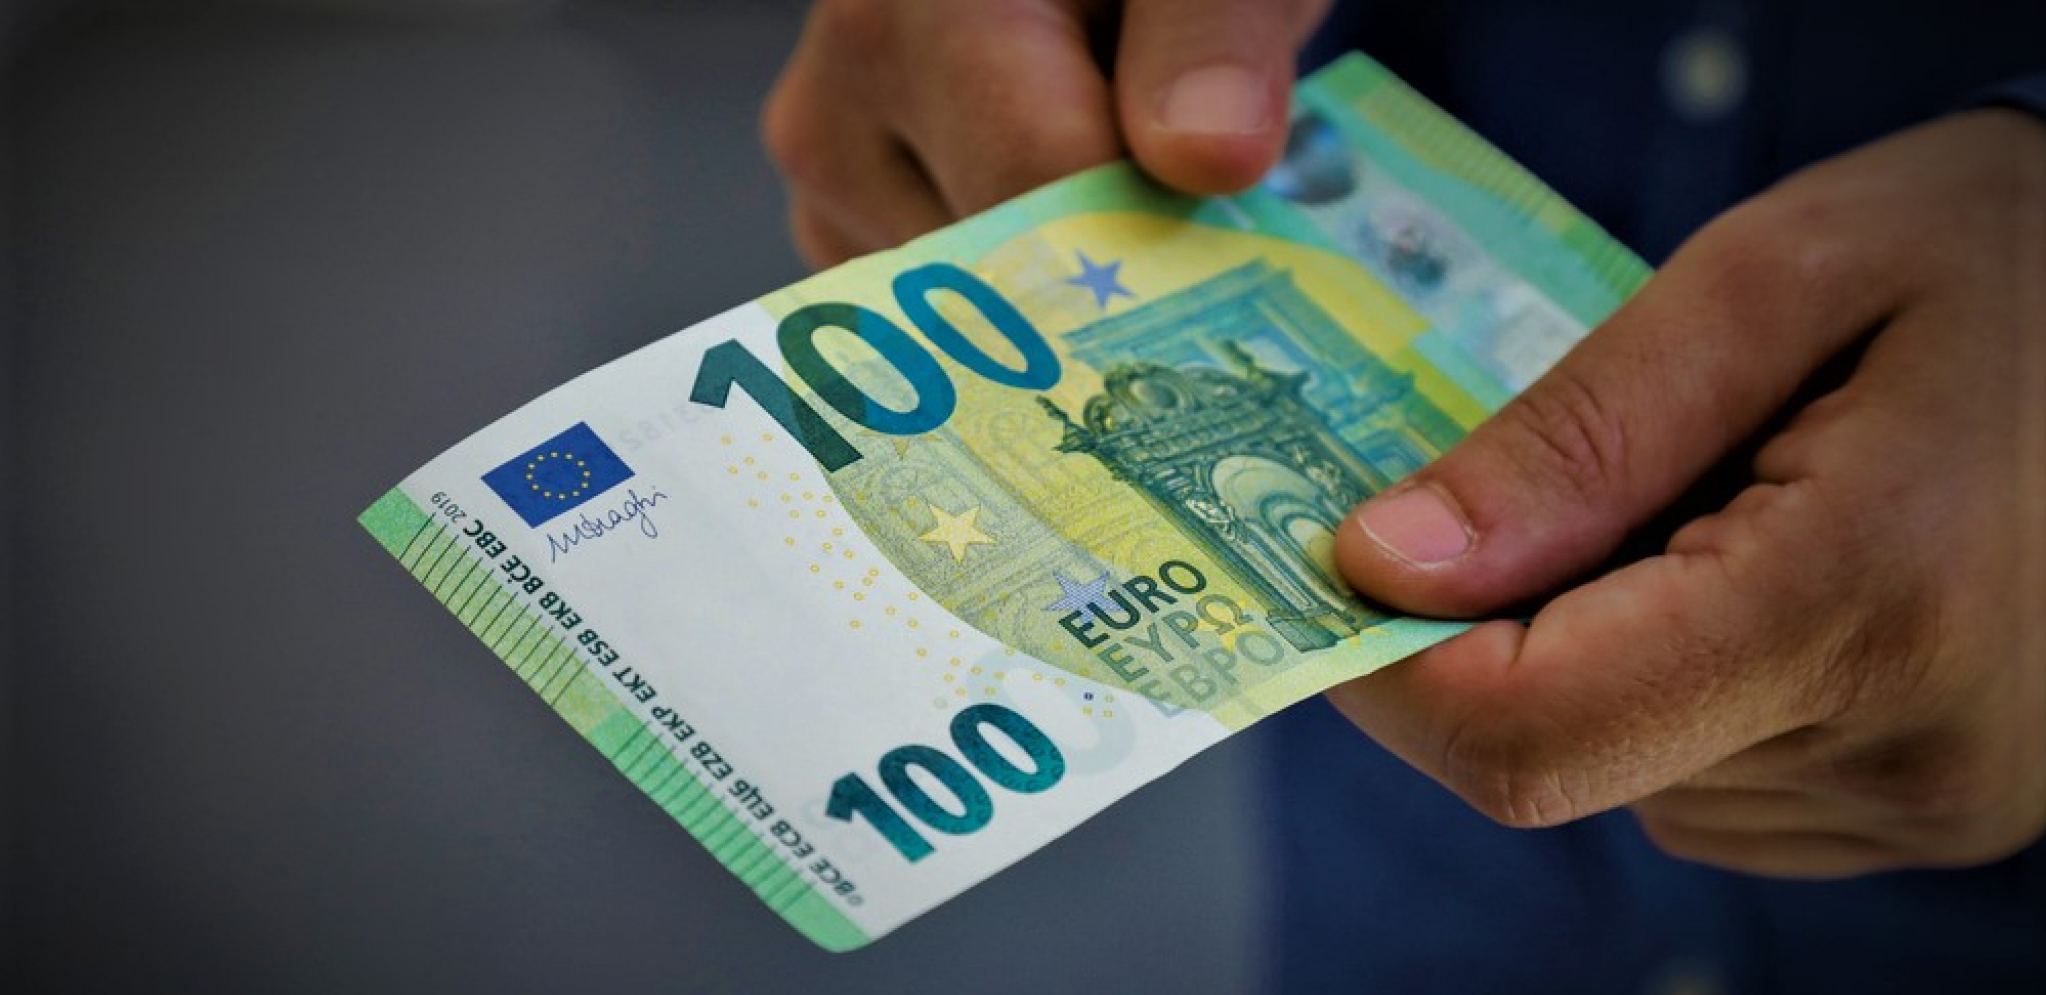 OGLASILA SE NARODNA BANKA SRBIJE Kursna lista vrednosti stranih valuta za sutra